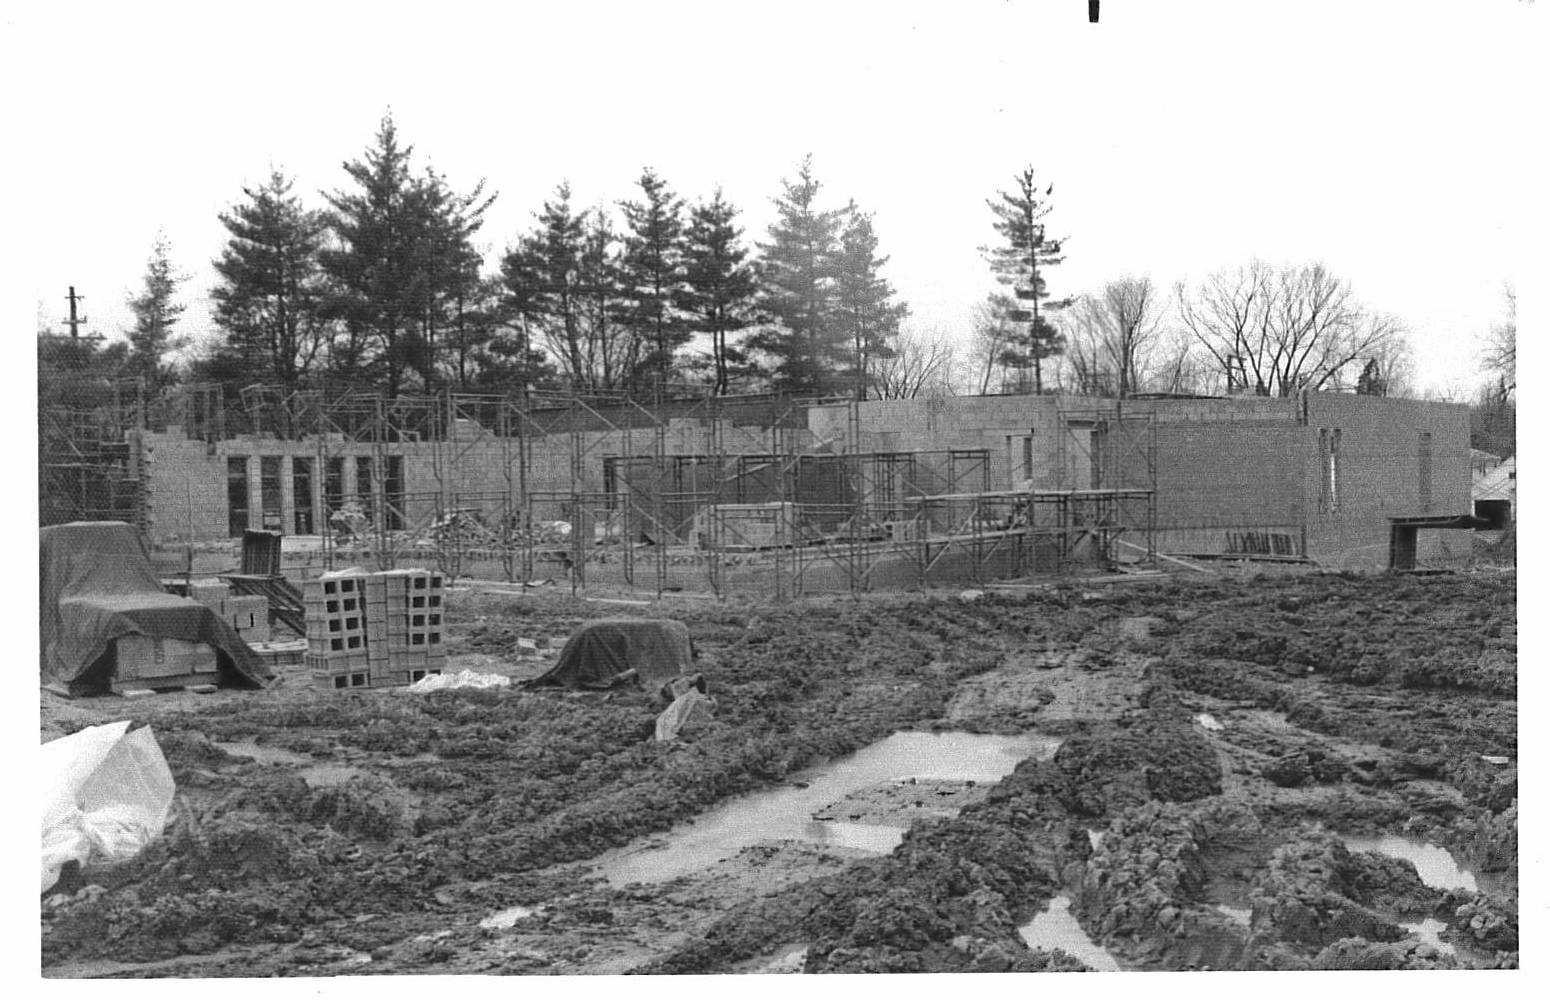 Building the synagogue at 2000 Washtenaw.